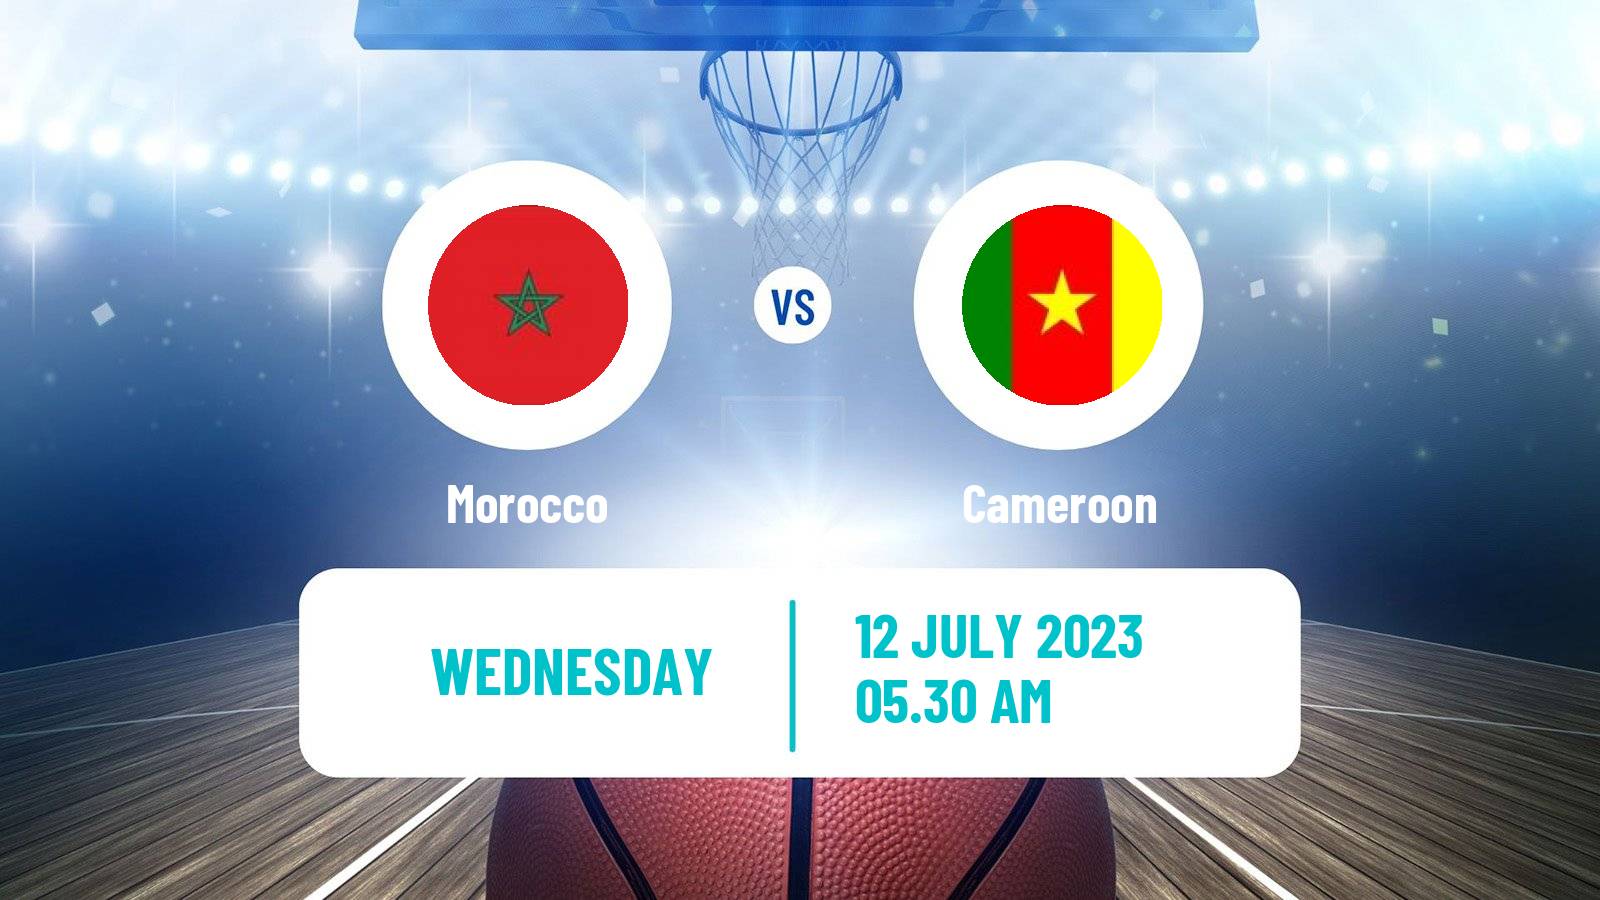 Basketball AfroCan Basketball Morocco - Cameroon